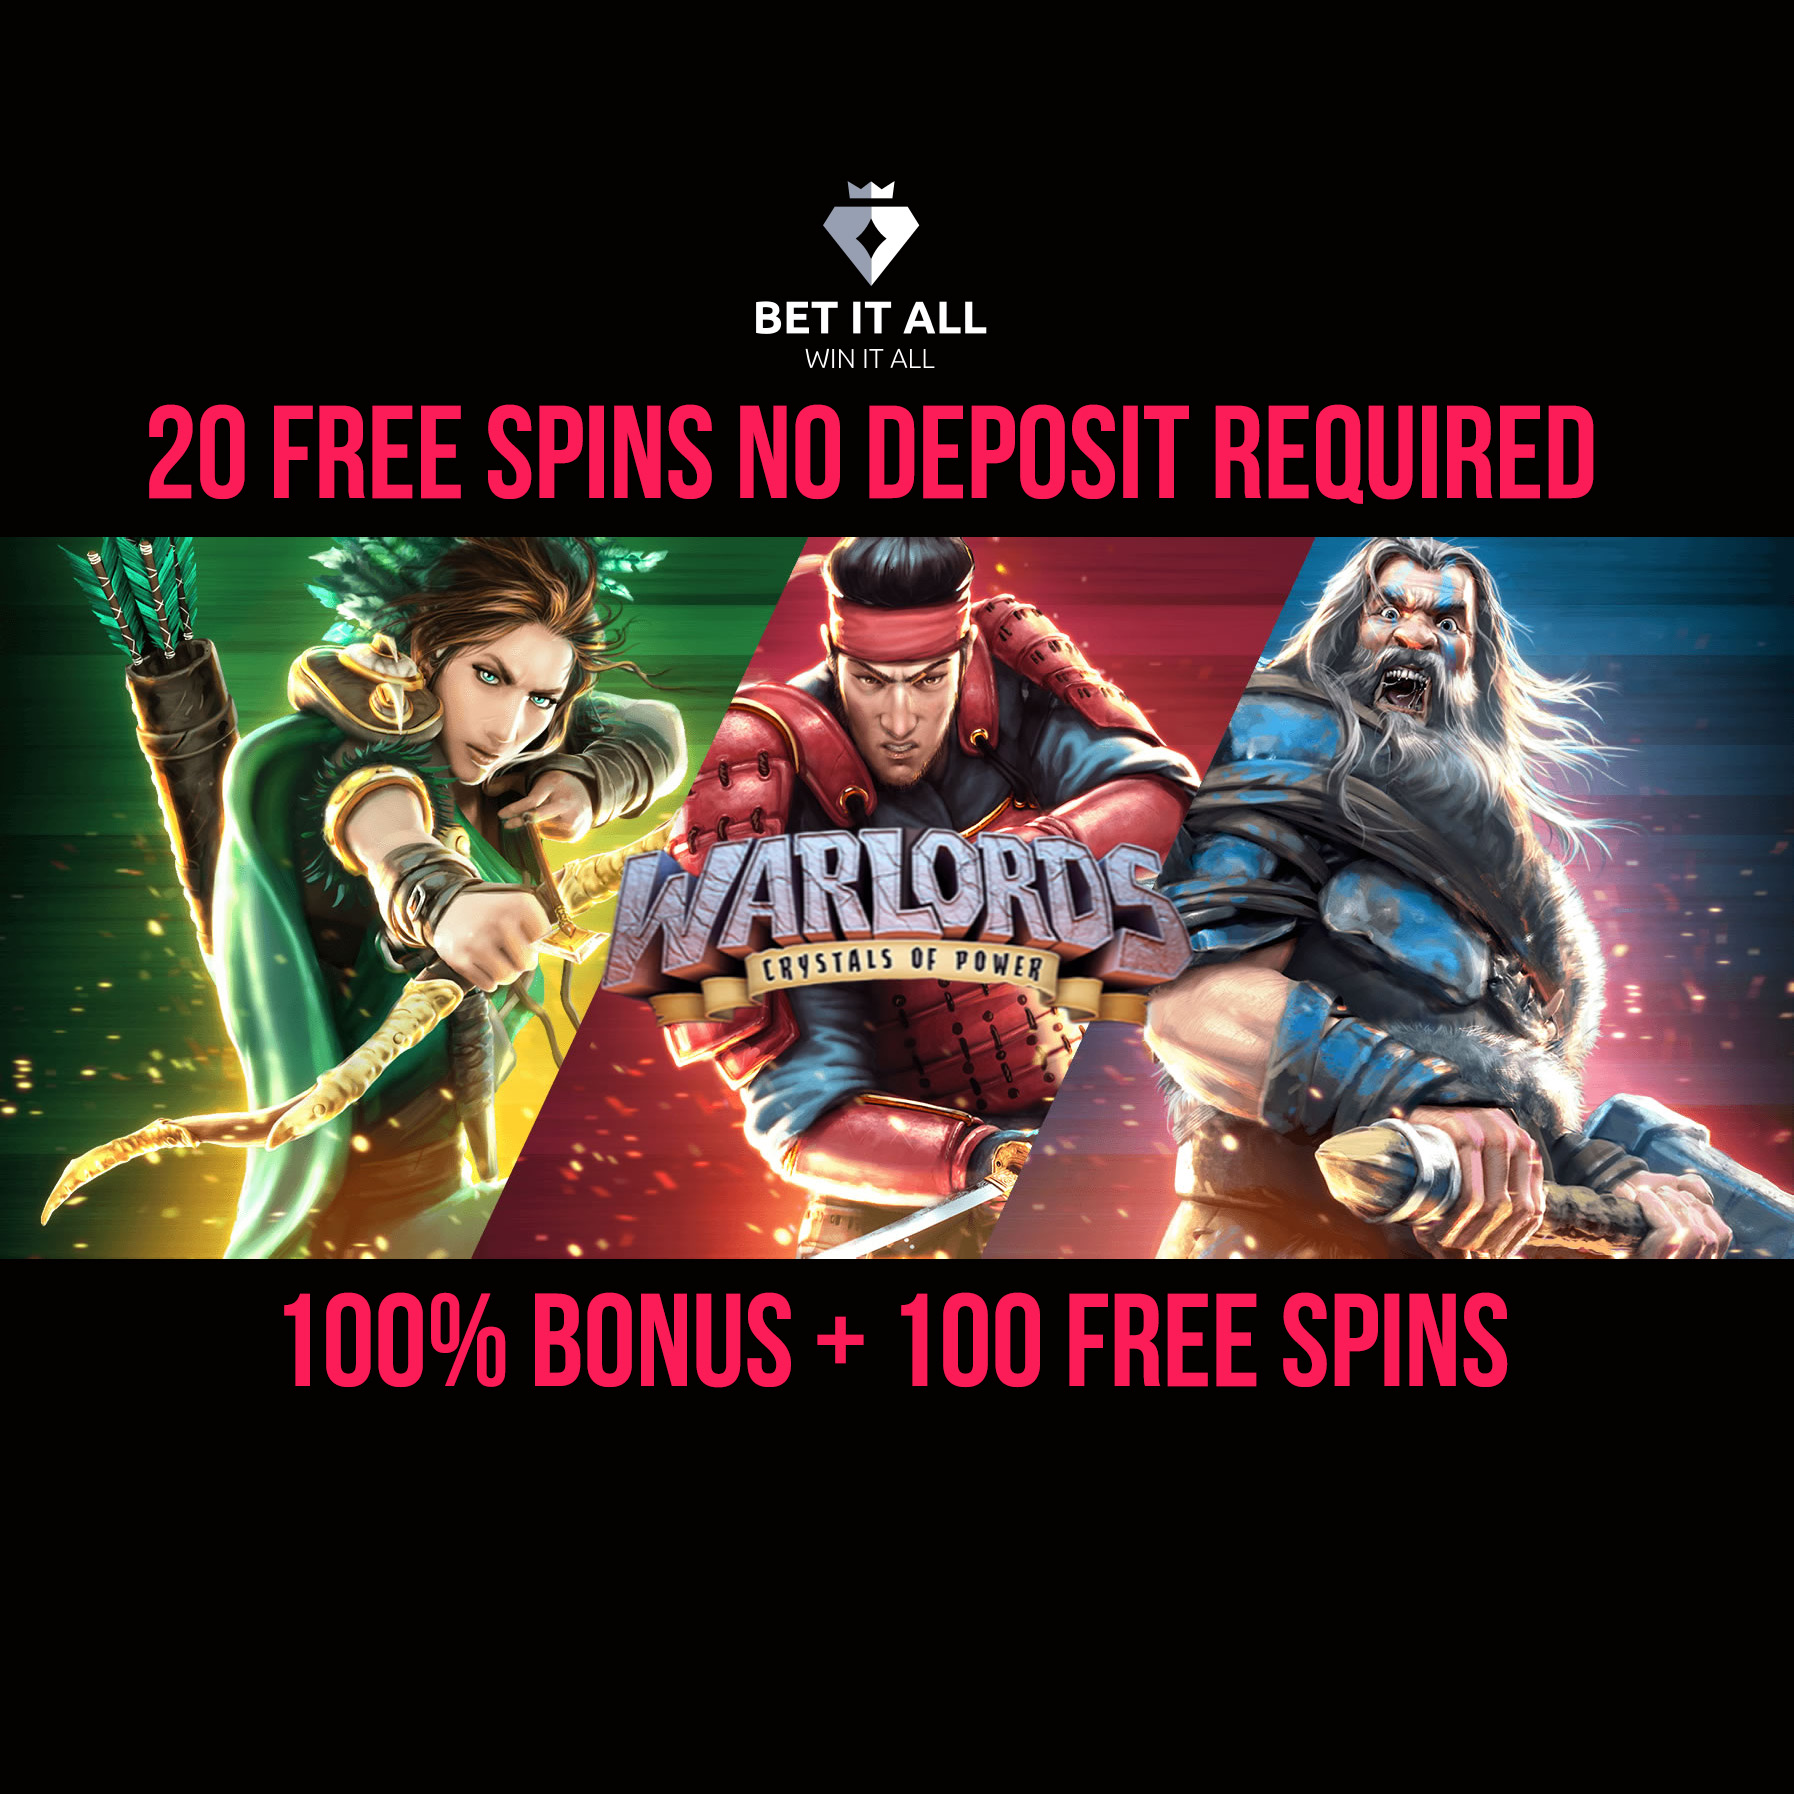 Casino No Deposit Free Spins